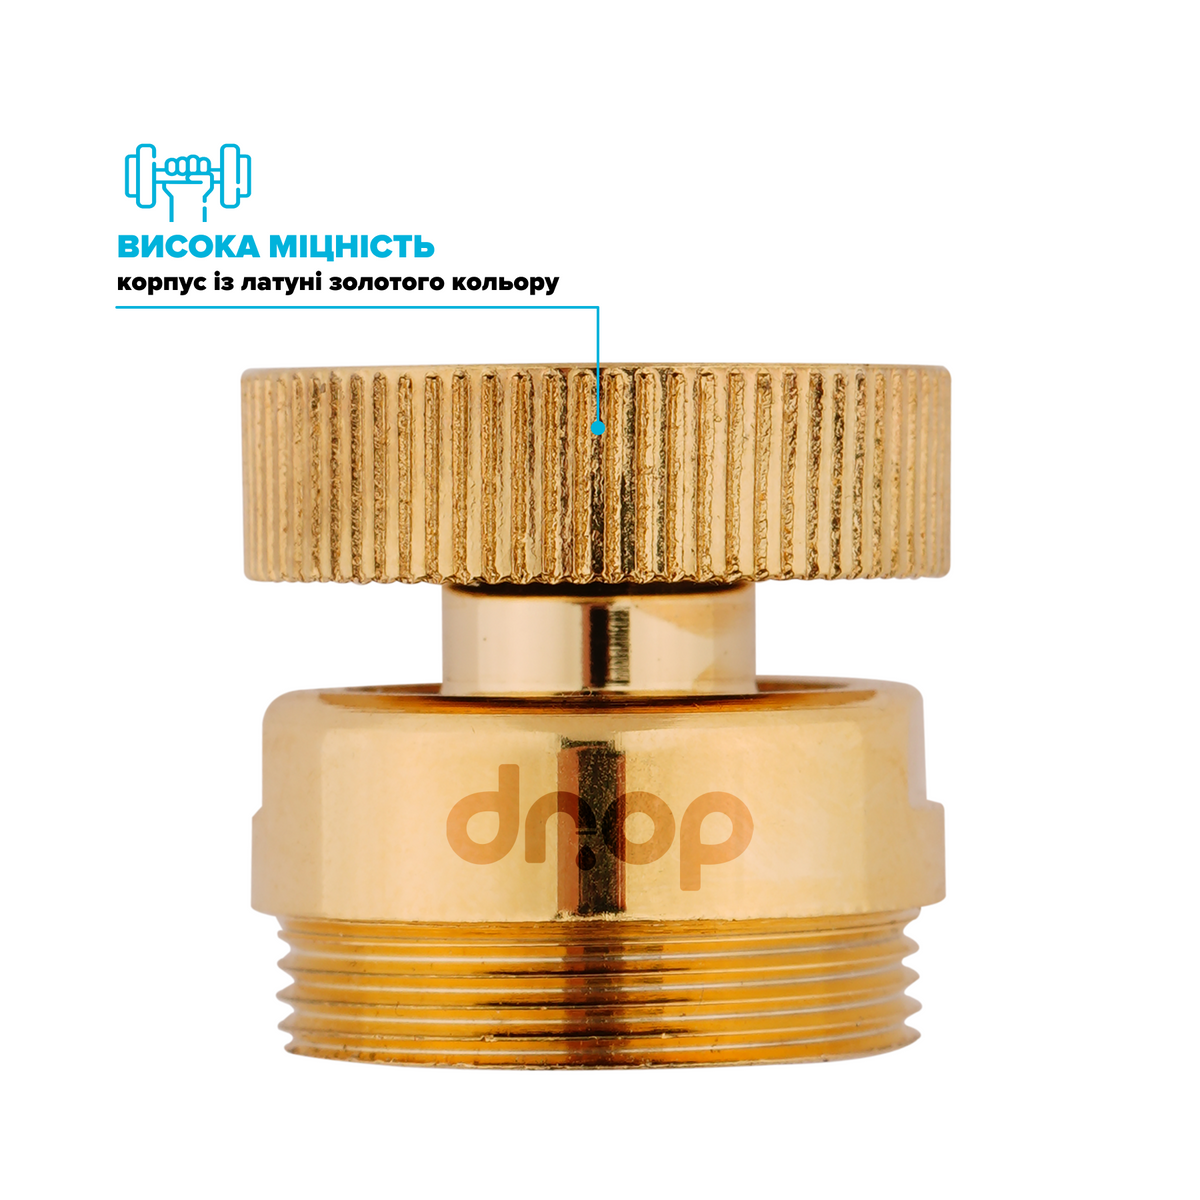 Поворотный 360° адаптер DROP СOLOR CL360F-GLD внутренняя резьба 22 мм угол 15° латунь цвет золотой